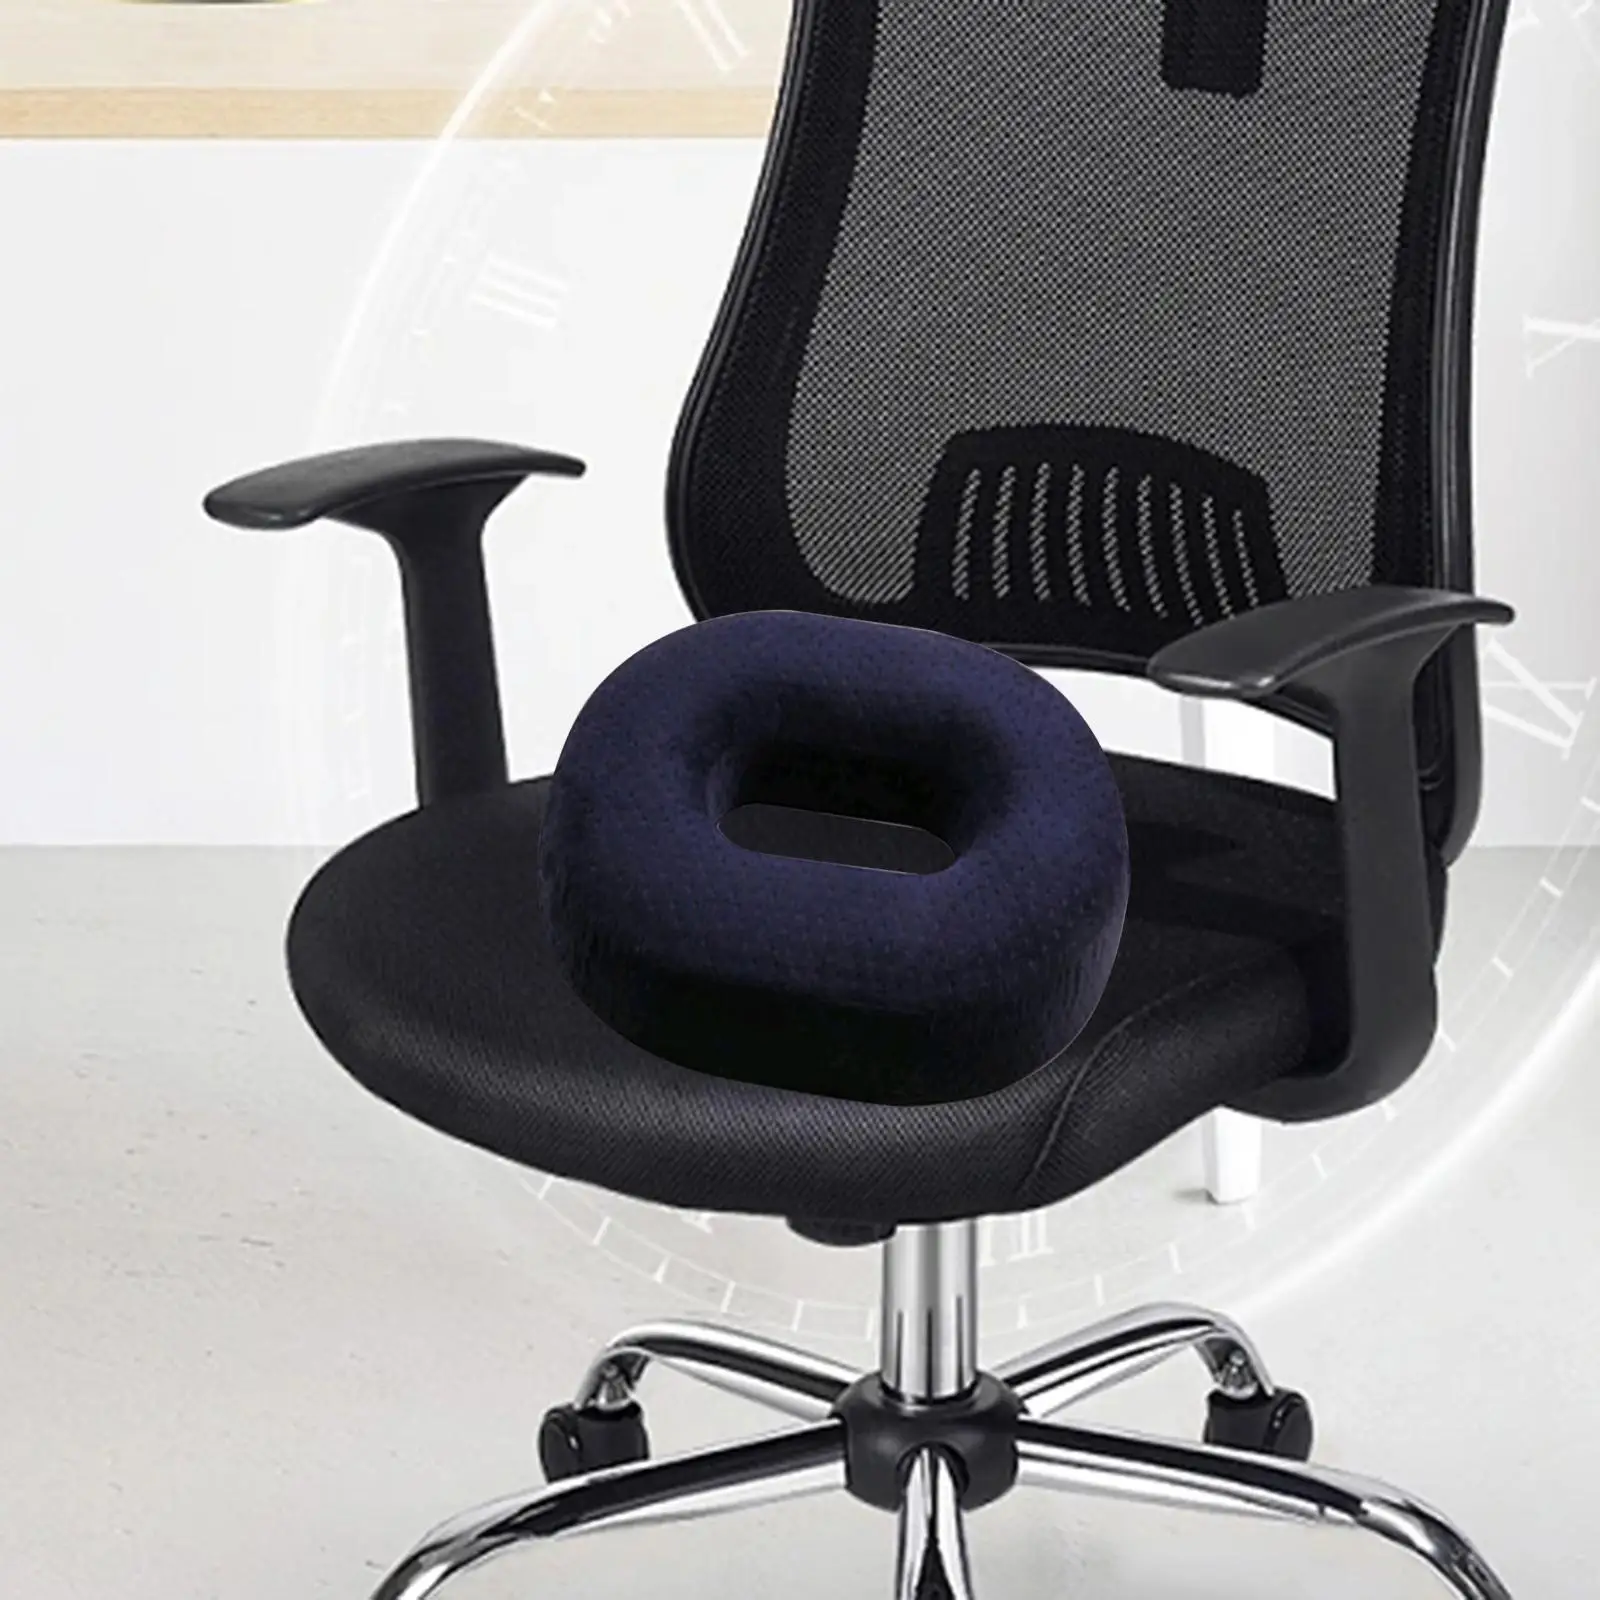 Seat Cushion Lightweight Easy to Clean Donut Cushion Tailbone Cushion Chair Cushion for Home Long Time Sitting Car Chair Office